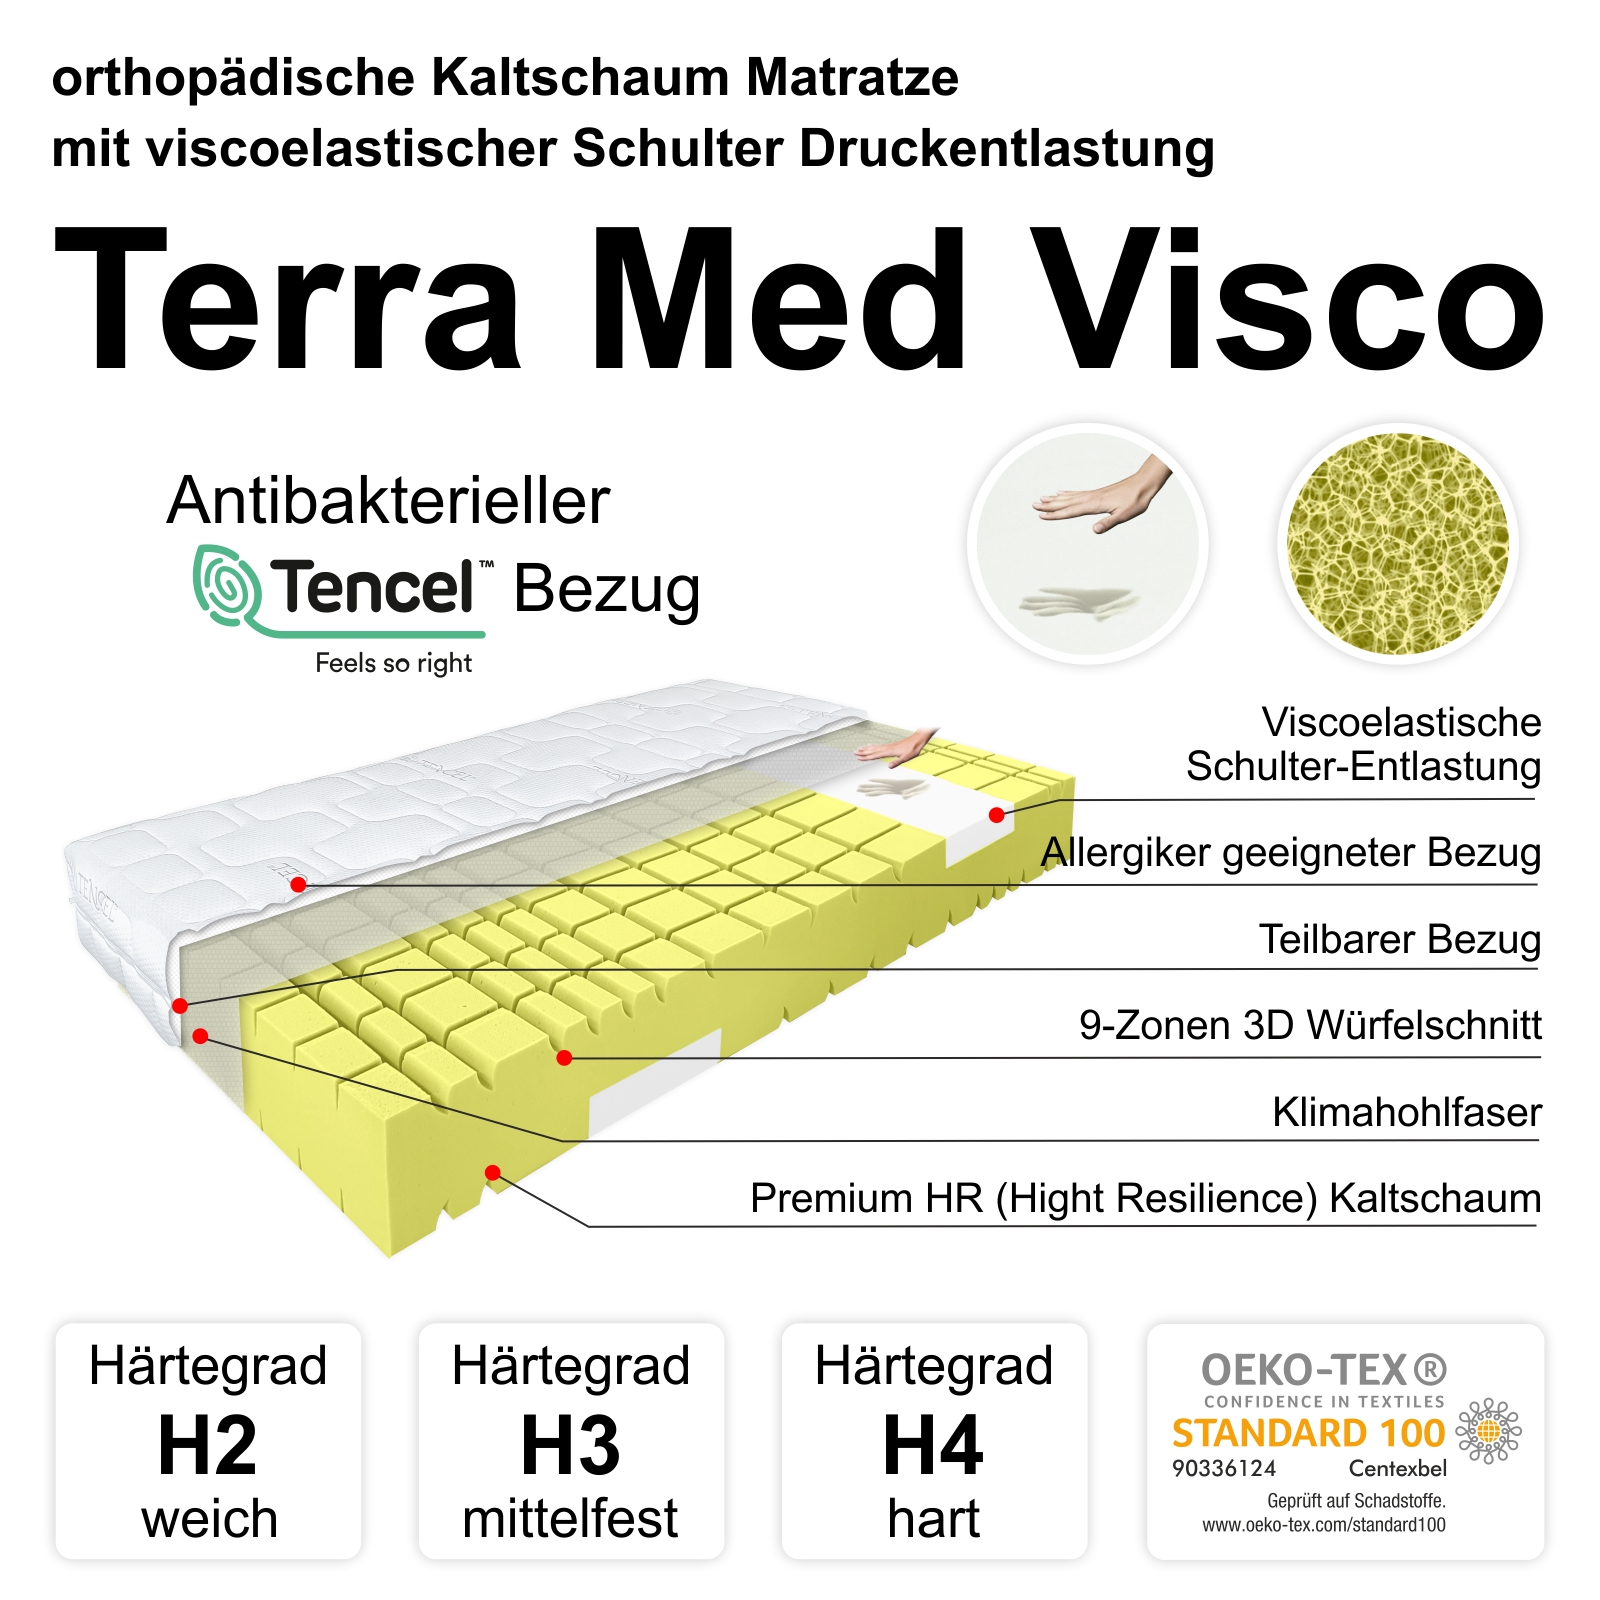 Kaltschaummatratze Terra Med Visco, Produktbild Bezug und Kern mit Merkmalen